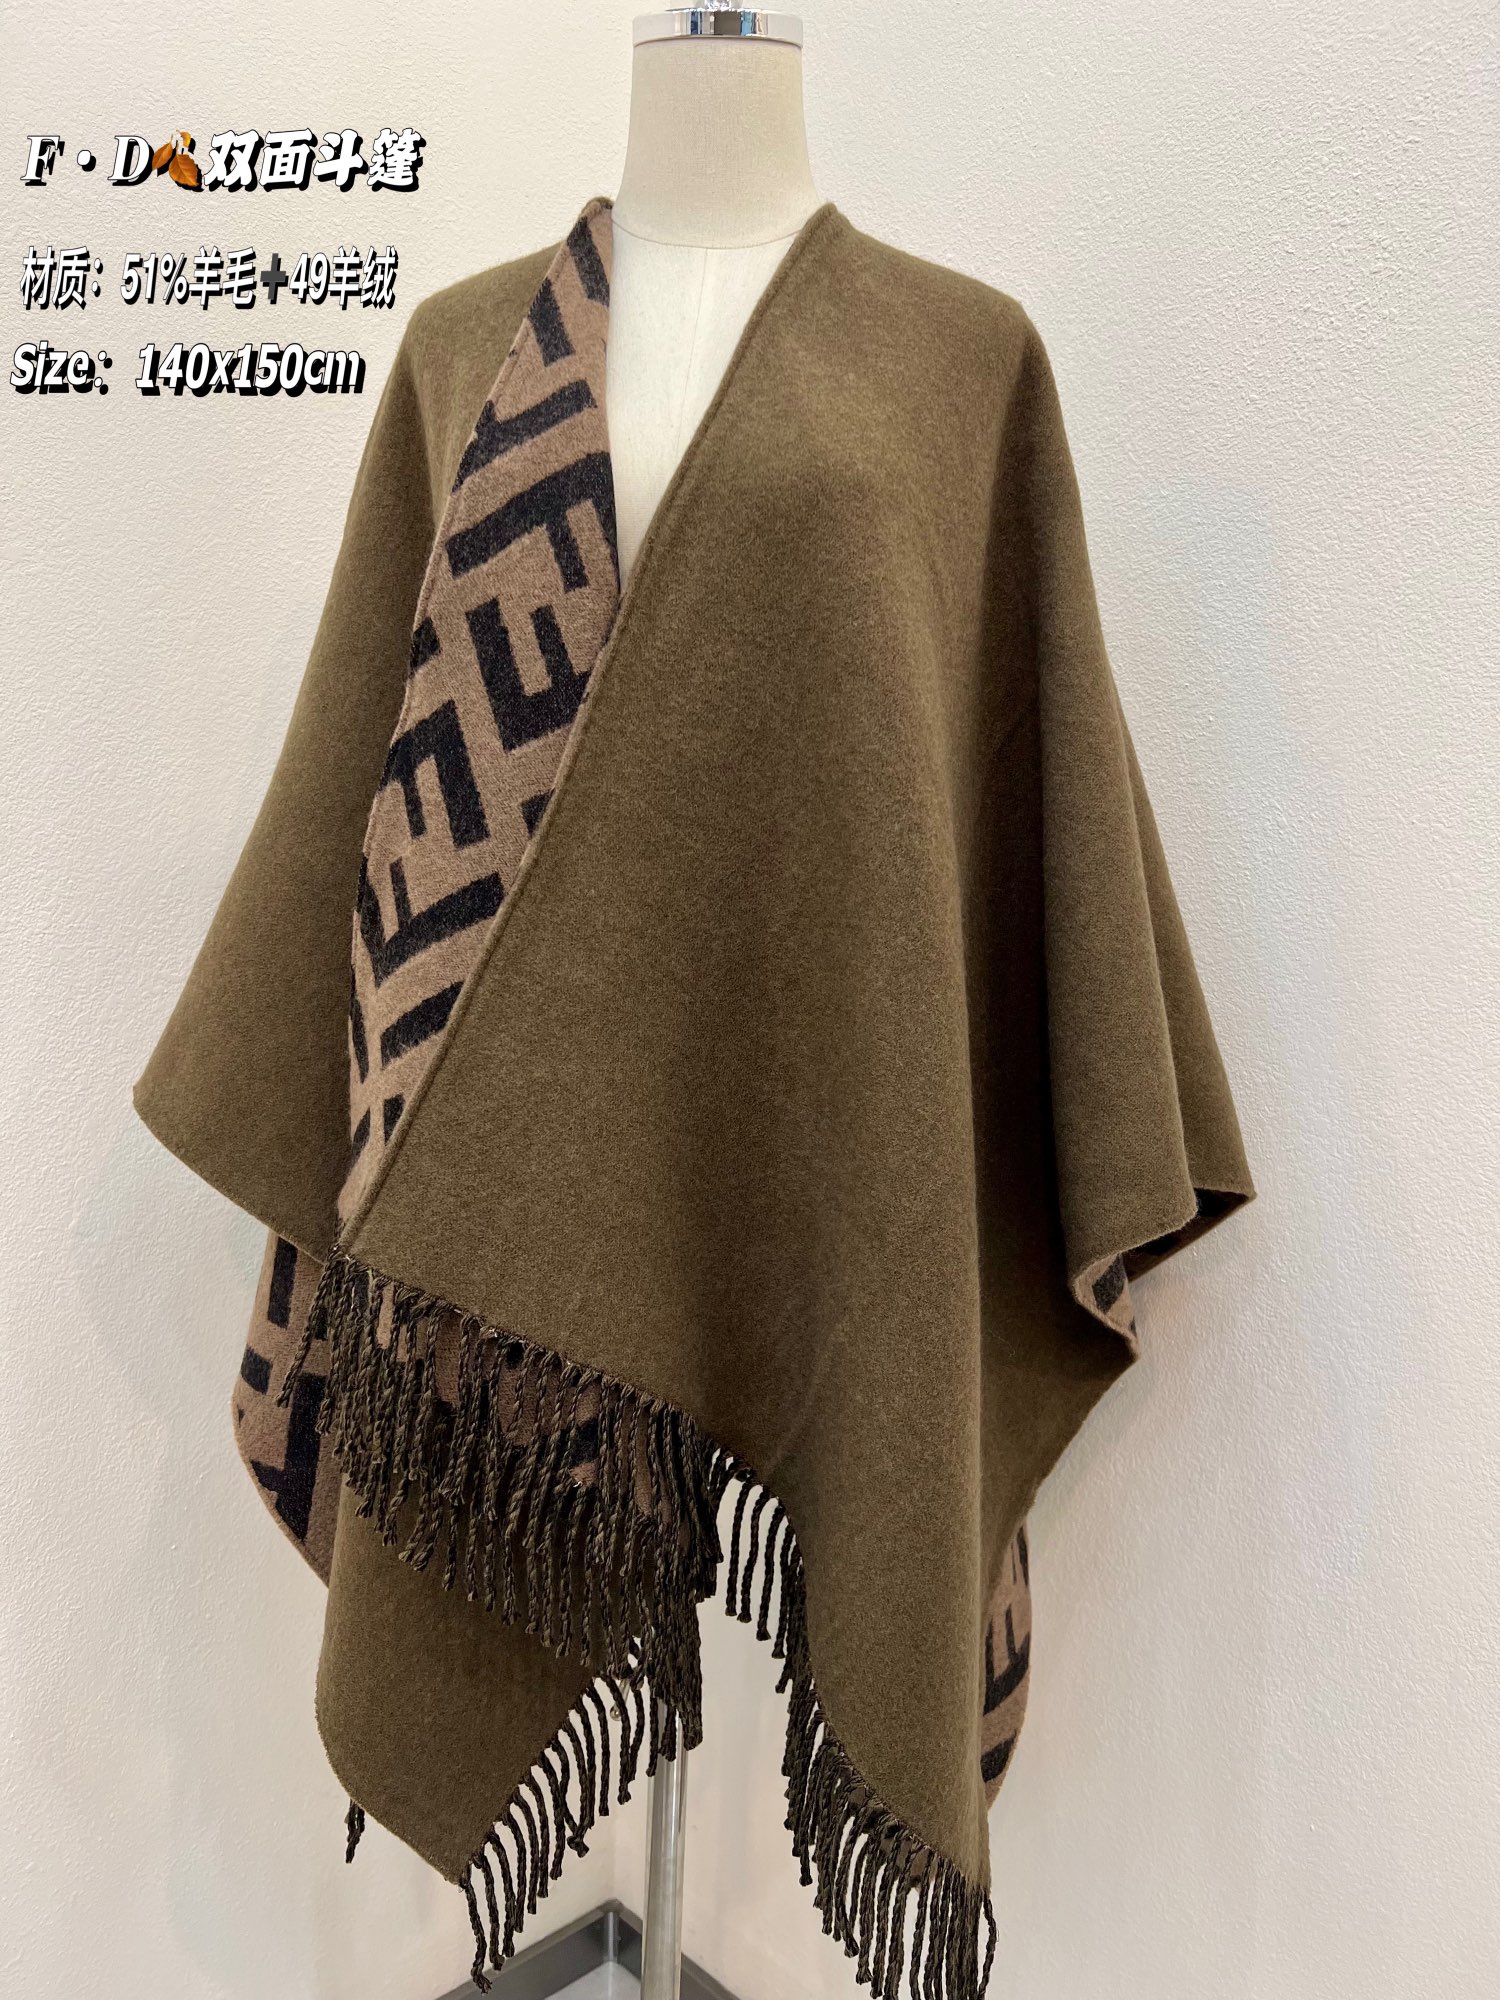 FENDI芬迪羊绒和羊毛混纺材质双面斗篷FXX715